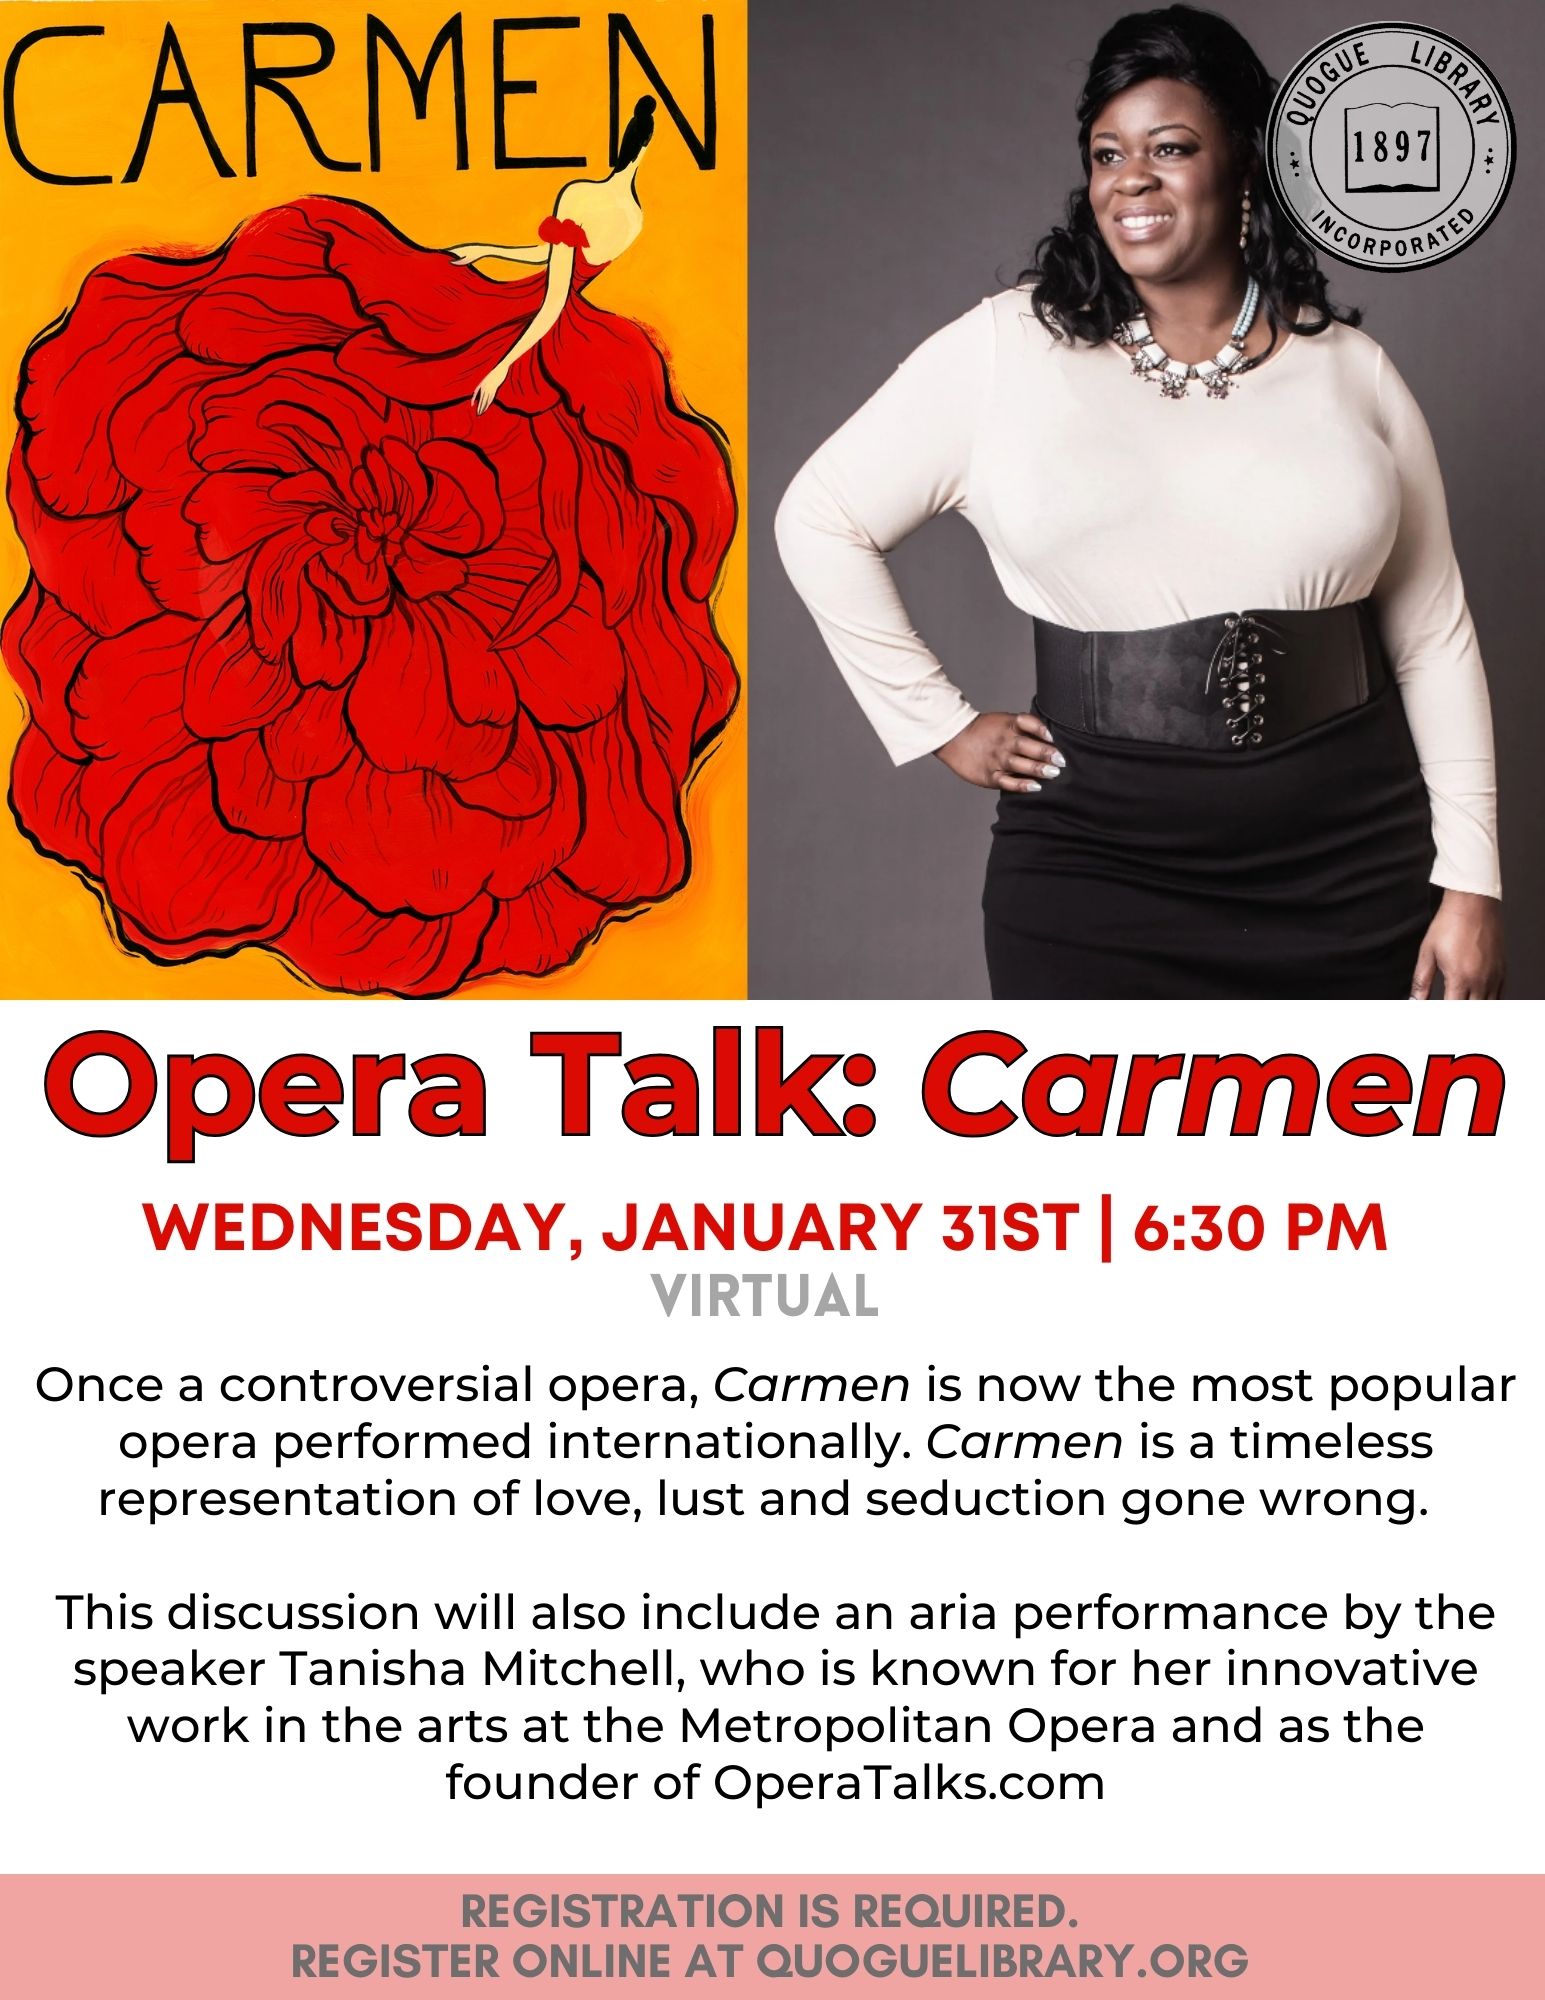 Opera Talk Carmen Quogue Library